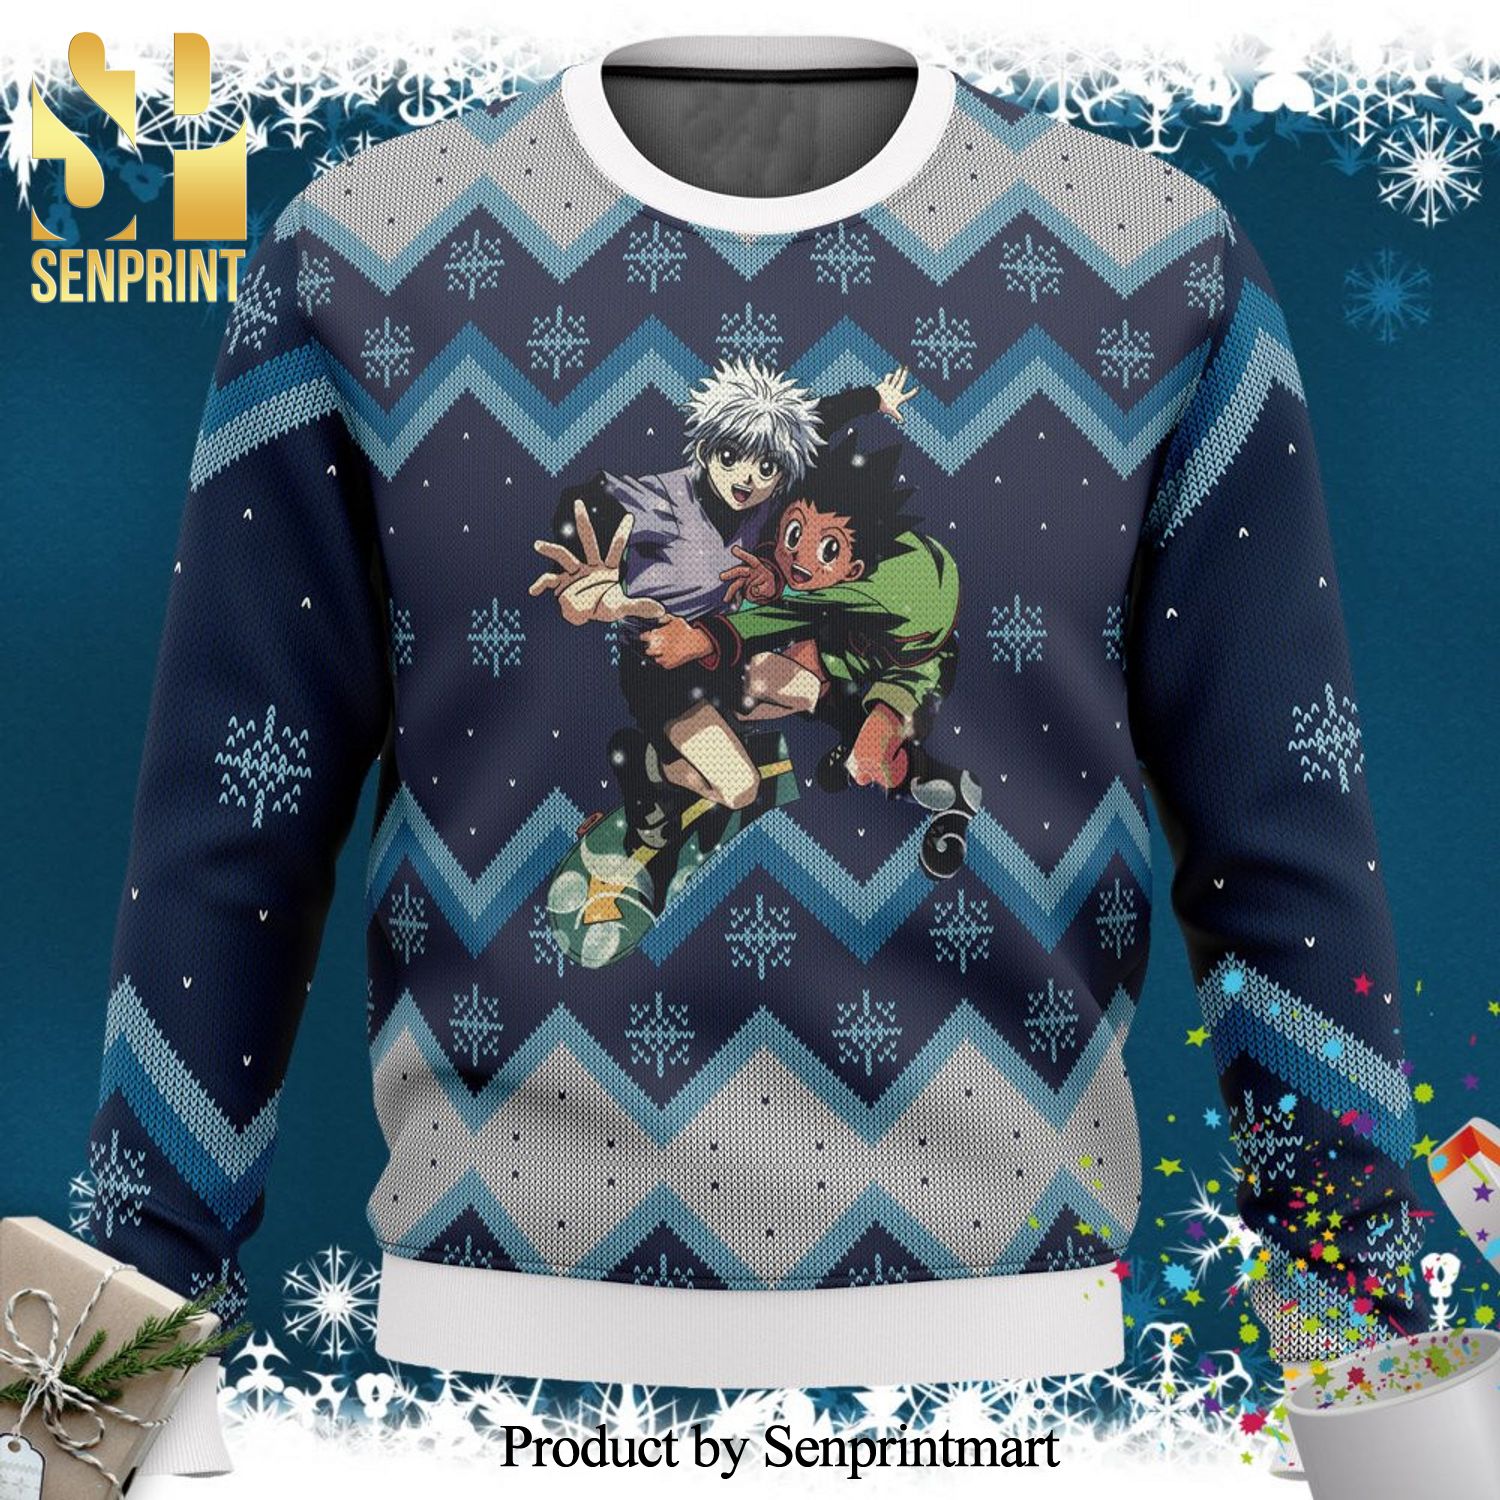 Akatsuki Ugly Christmas Sweater Anime Xmas Gift - Trends Bedding